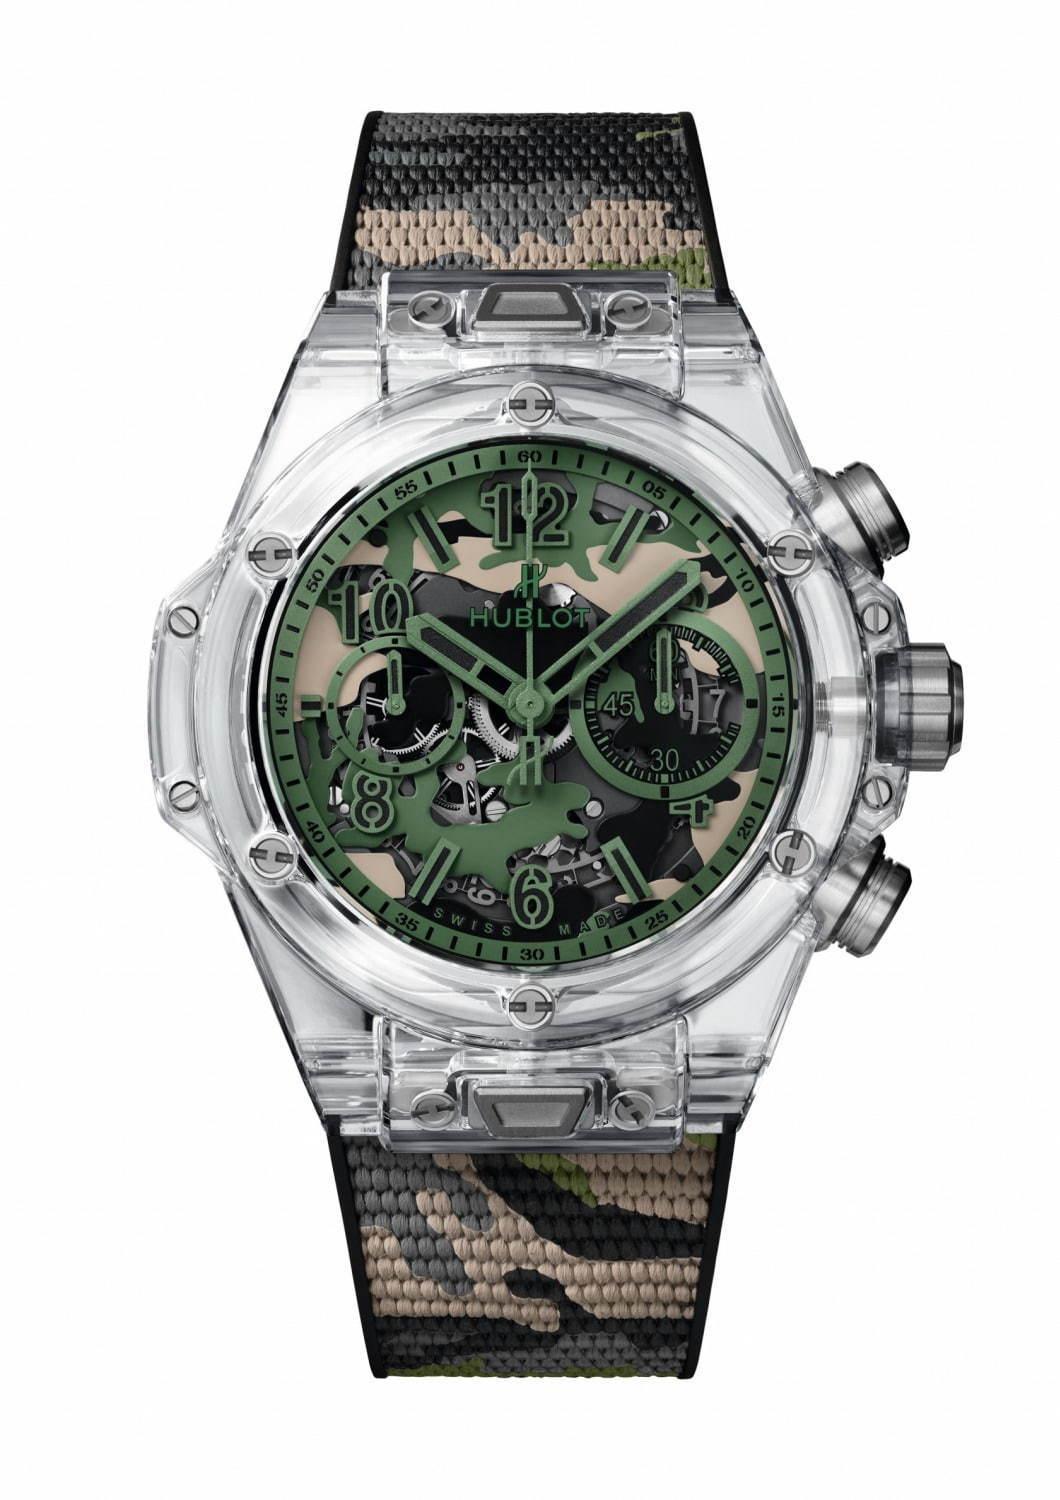 ウブロの日本限定腕時計「ビッグ・バン ウニコ サファイア カモフラージュ」スケルトン×迷彩柄ダイアル コピー